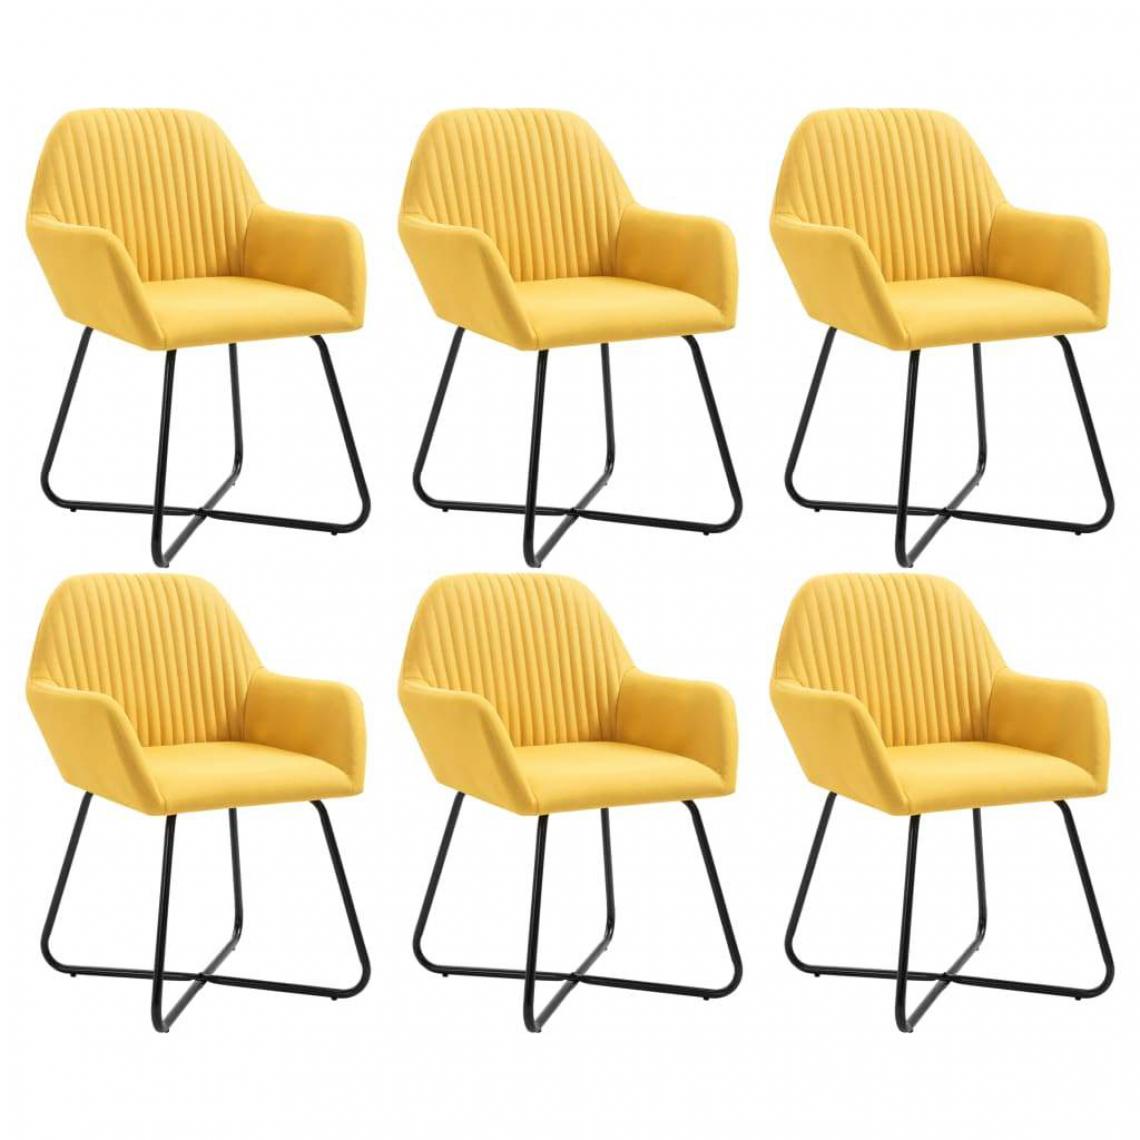 Decoshop26 - Lot de 6 chaises de salle à manger cuisine design moderne tissu jaune CDS022534 - Chaises